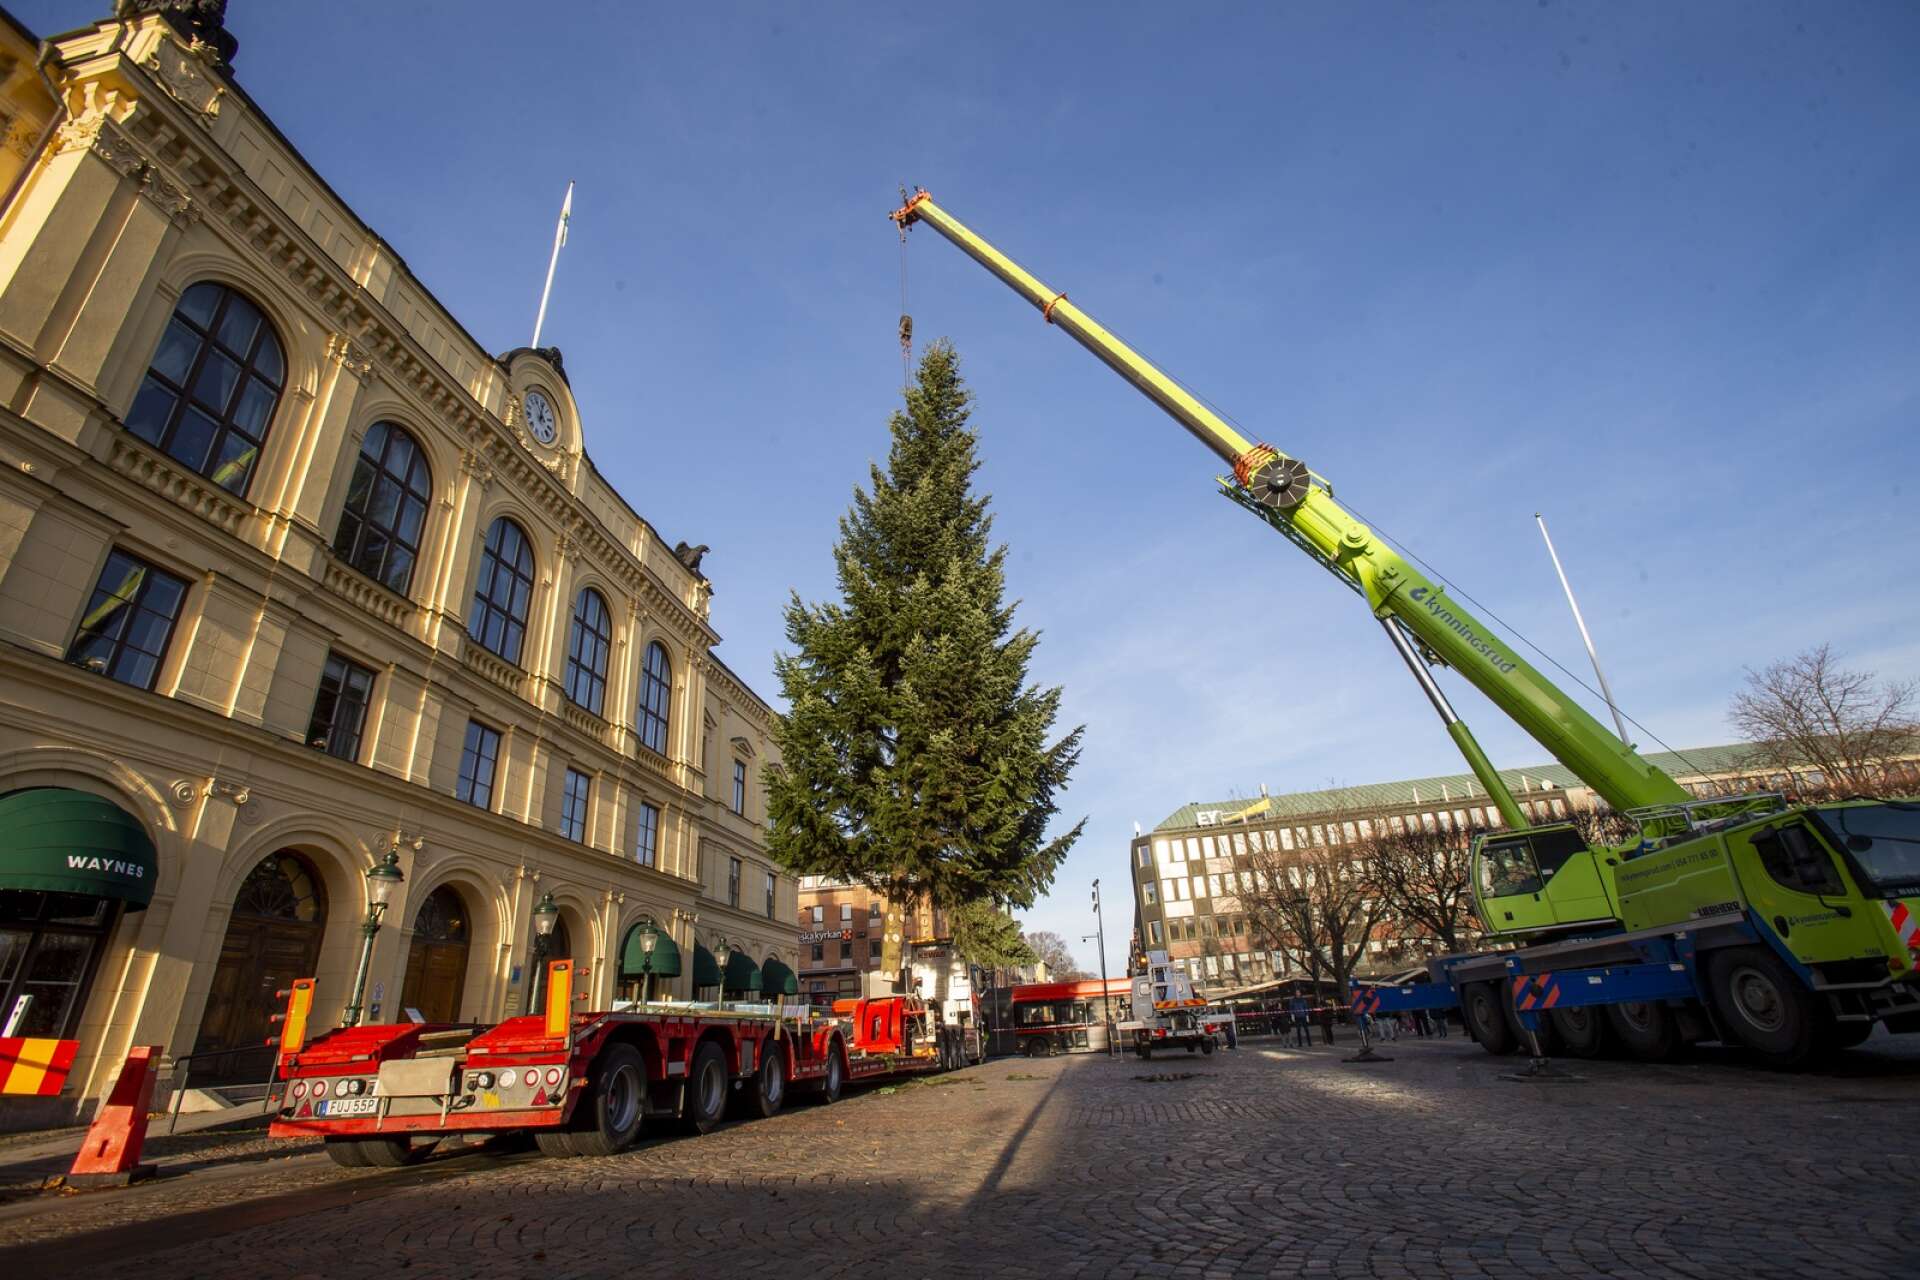 Fjolårets julgran hämtades från Kanikenäsbanken intill gamla Café August innan den transporterades till Stora torget.